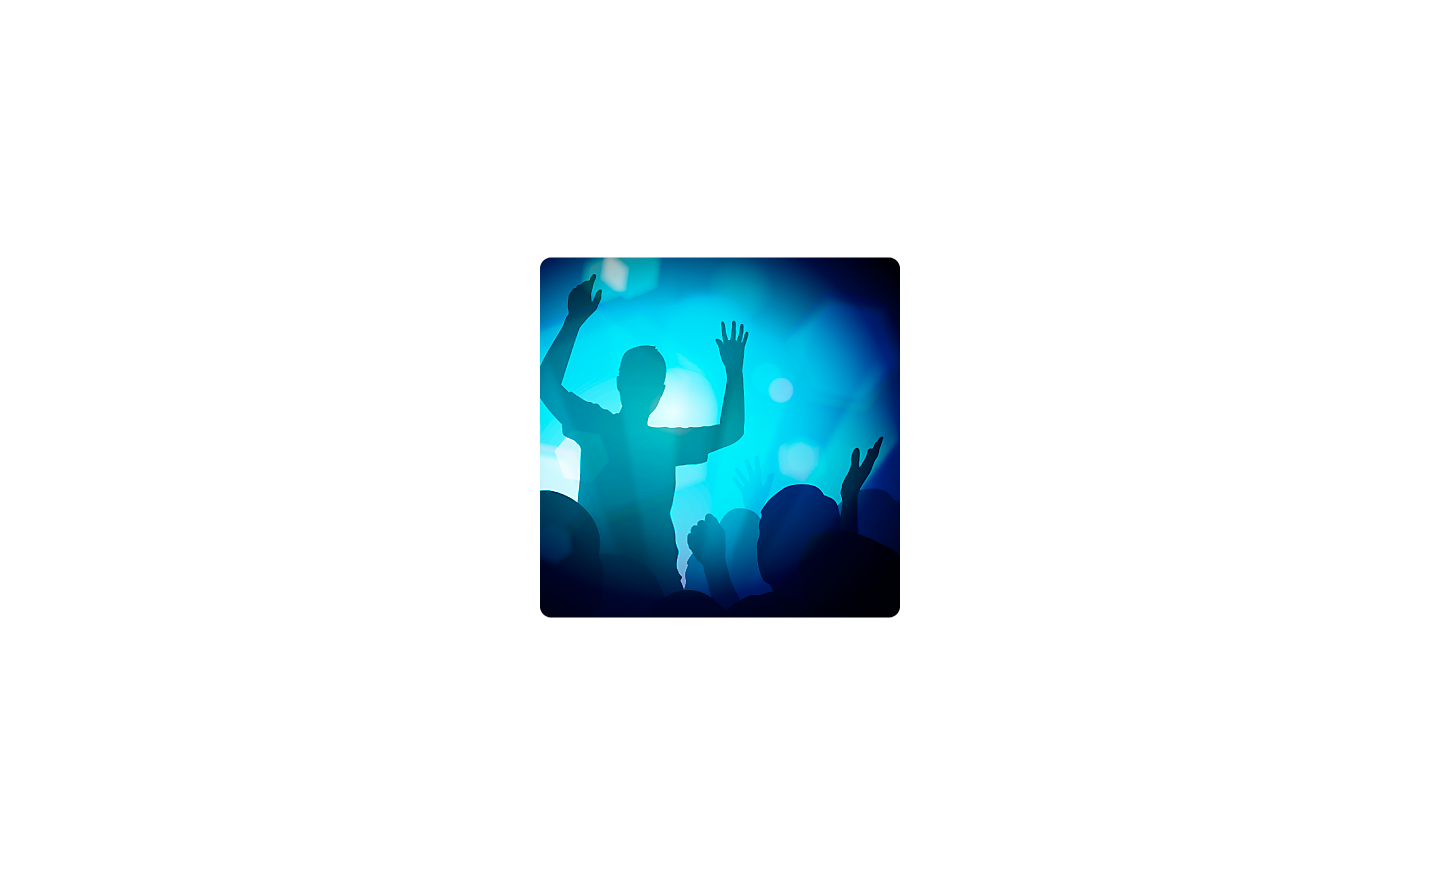 Imagen de una persona con los brazos alzados en un entorno oscuro con iluminación azul